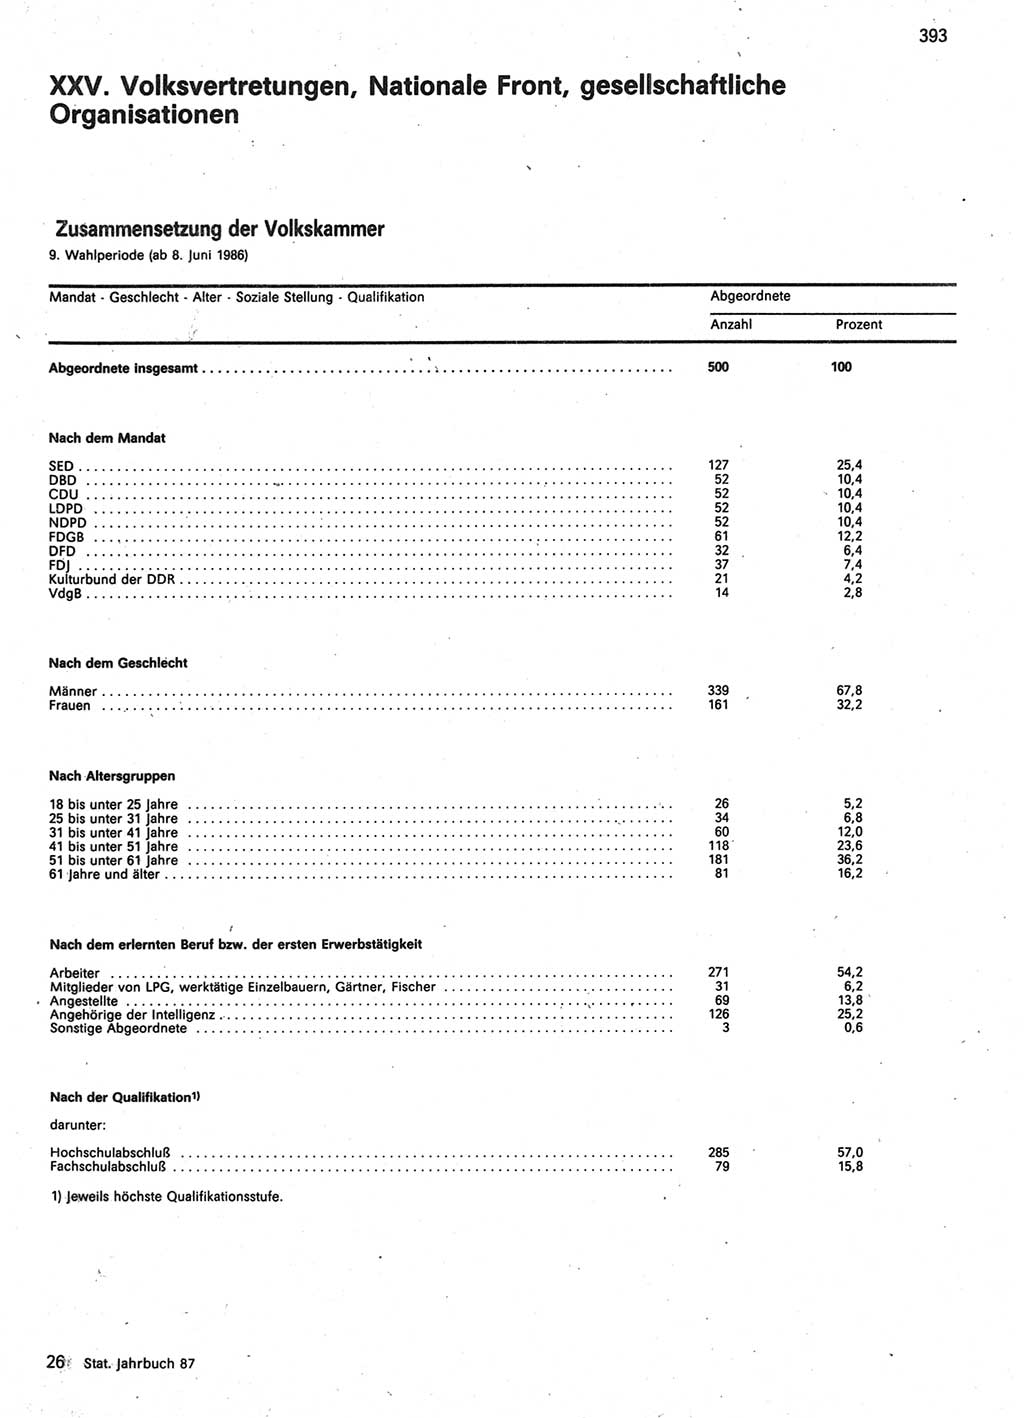 Statistisches Jahrbuch der Deutschen Demokratischen Republik (DDR) 1987, Seite 393 (Stat. Jb. DDR 1987, S. 393)